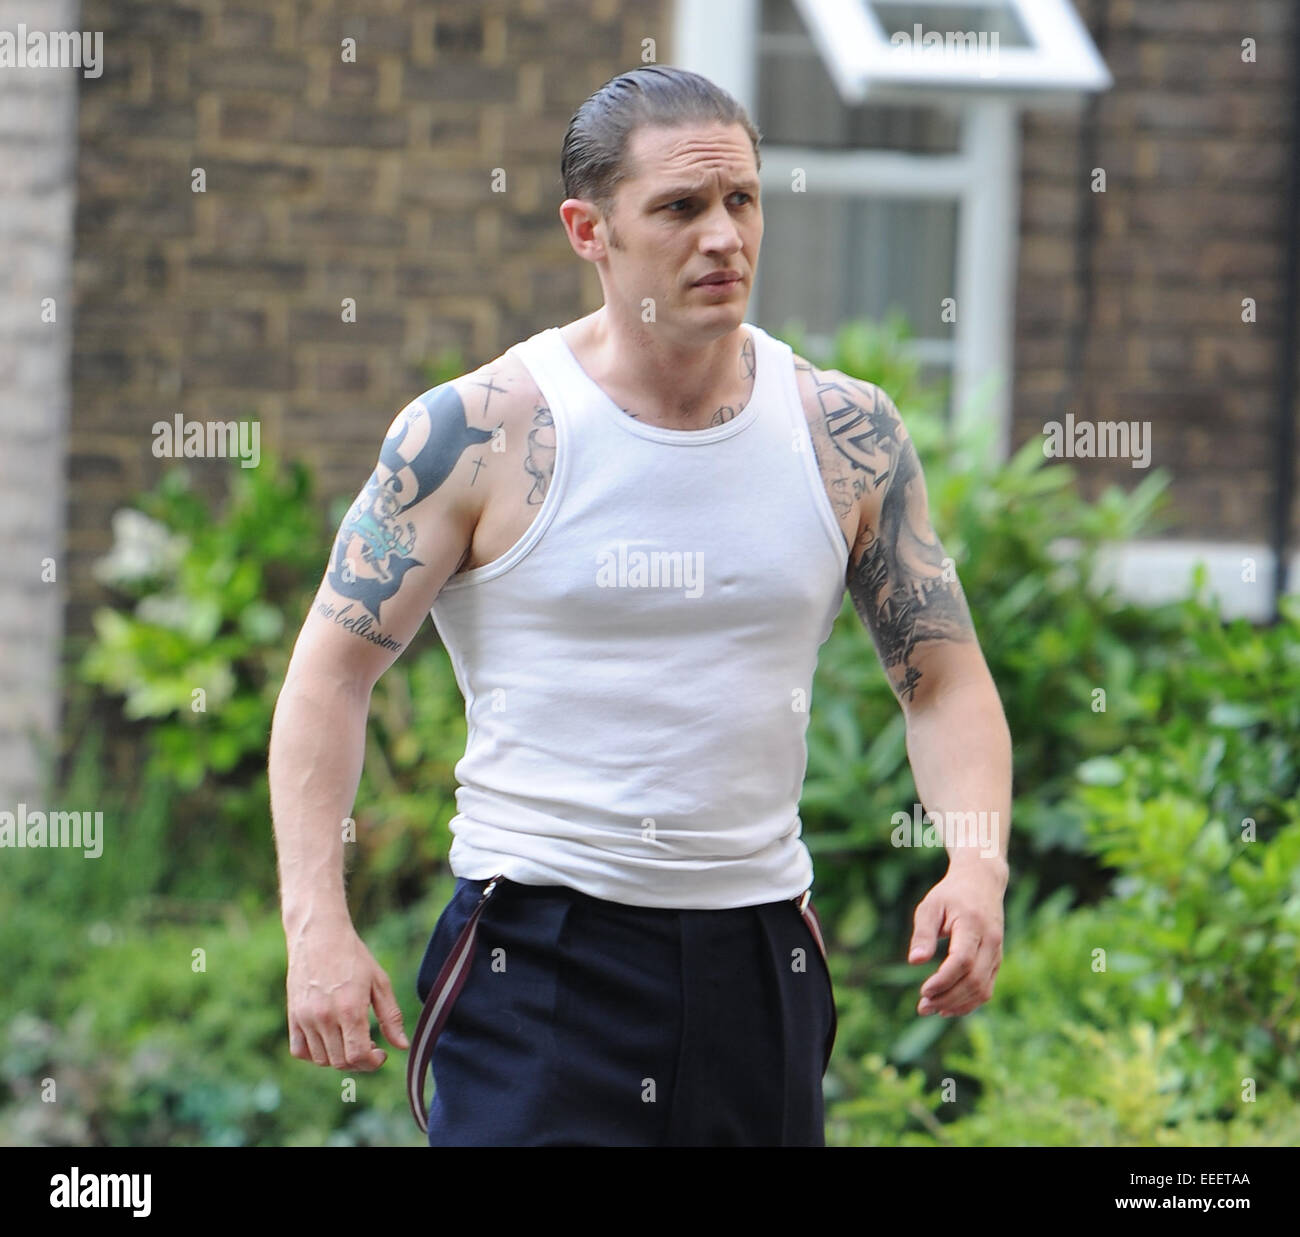 Tom Hardy Dreharbeiten Szenen am Set von "Legend" Featuring: Tom Hardy wo:  London, Vereinigtes Königreich bei: 14. Juli 2014 Stockfotografie - Alamy